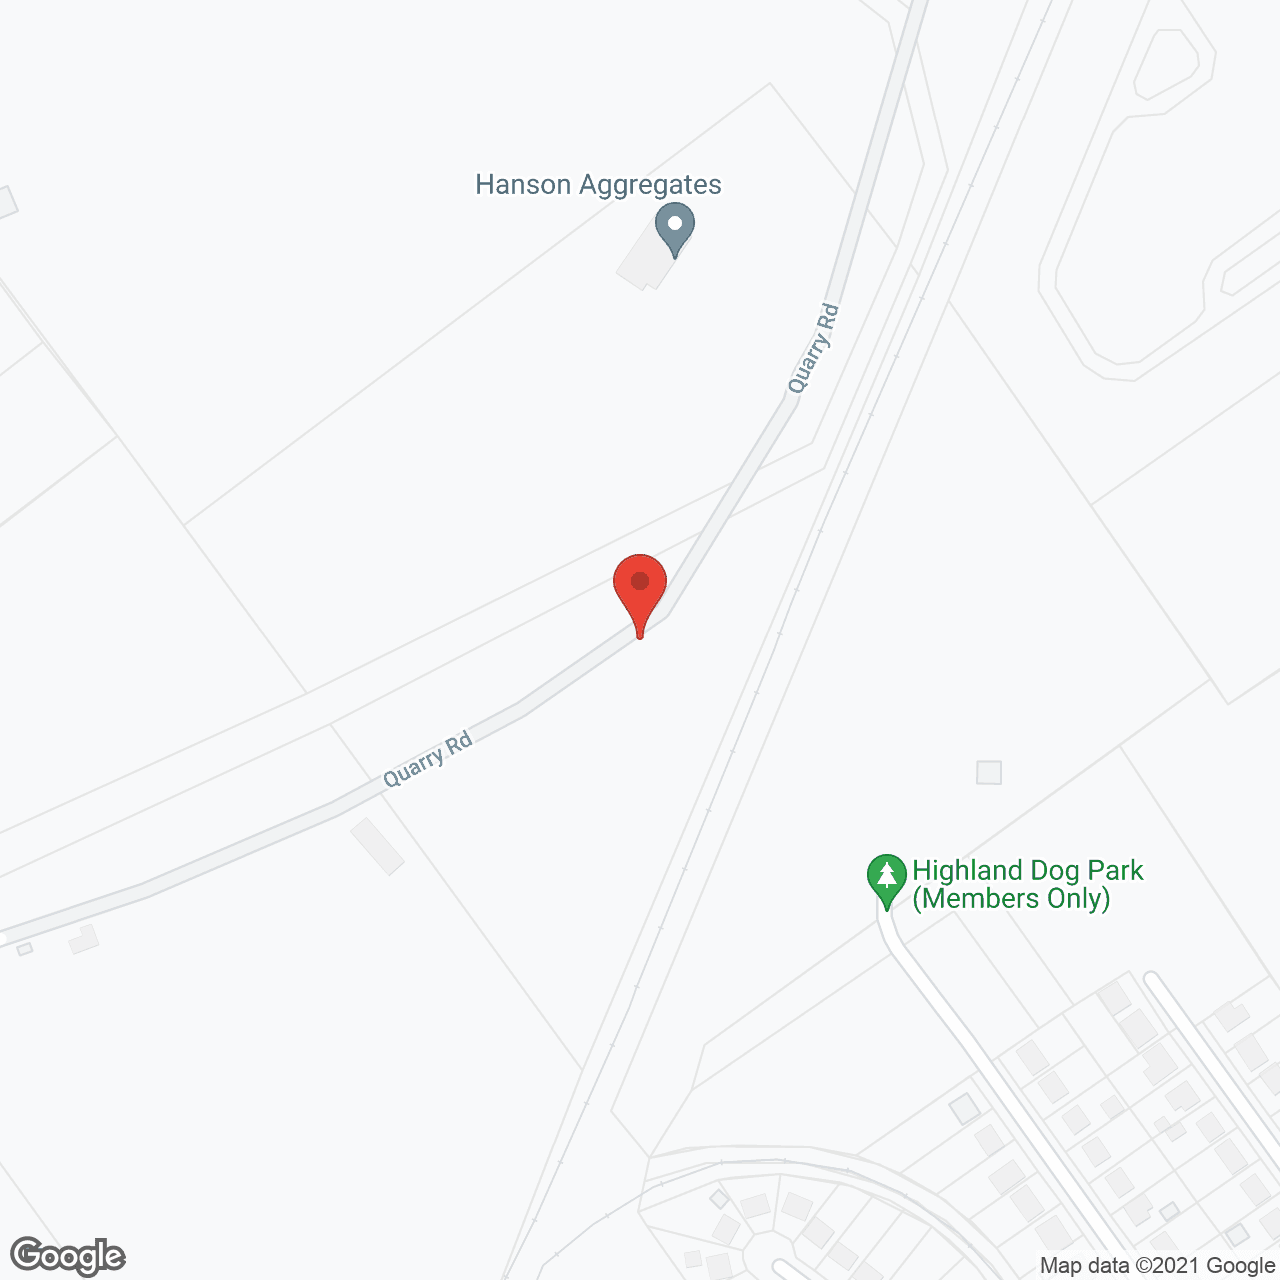 RiverSide Meadows in google map